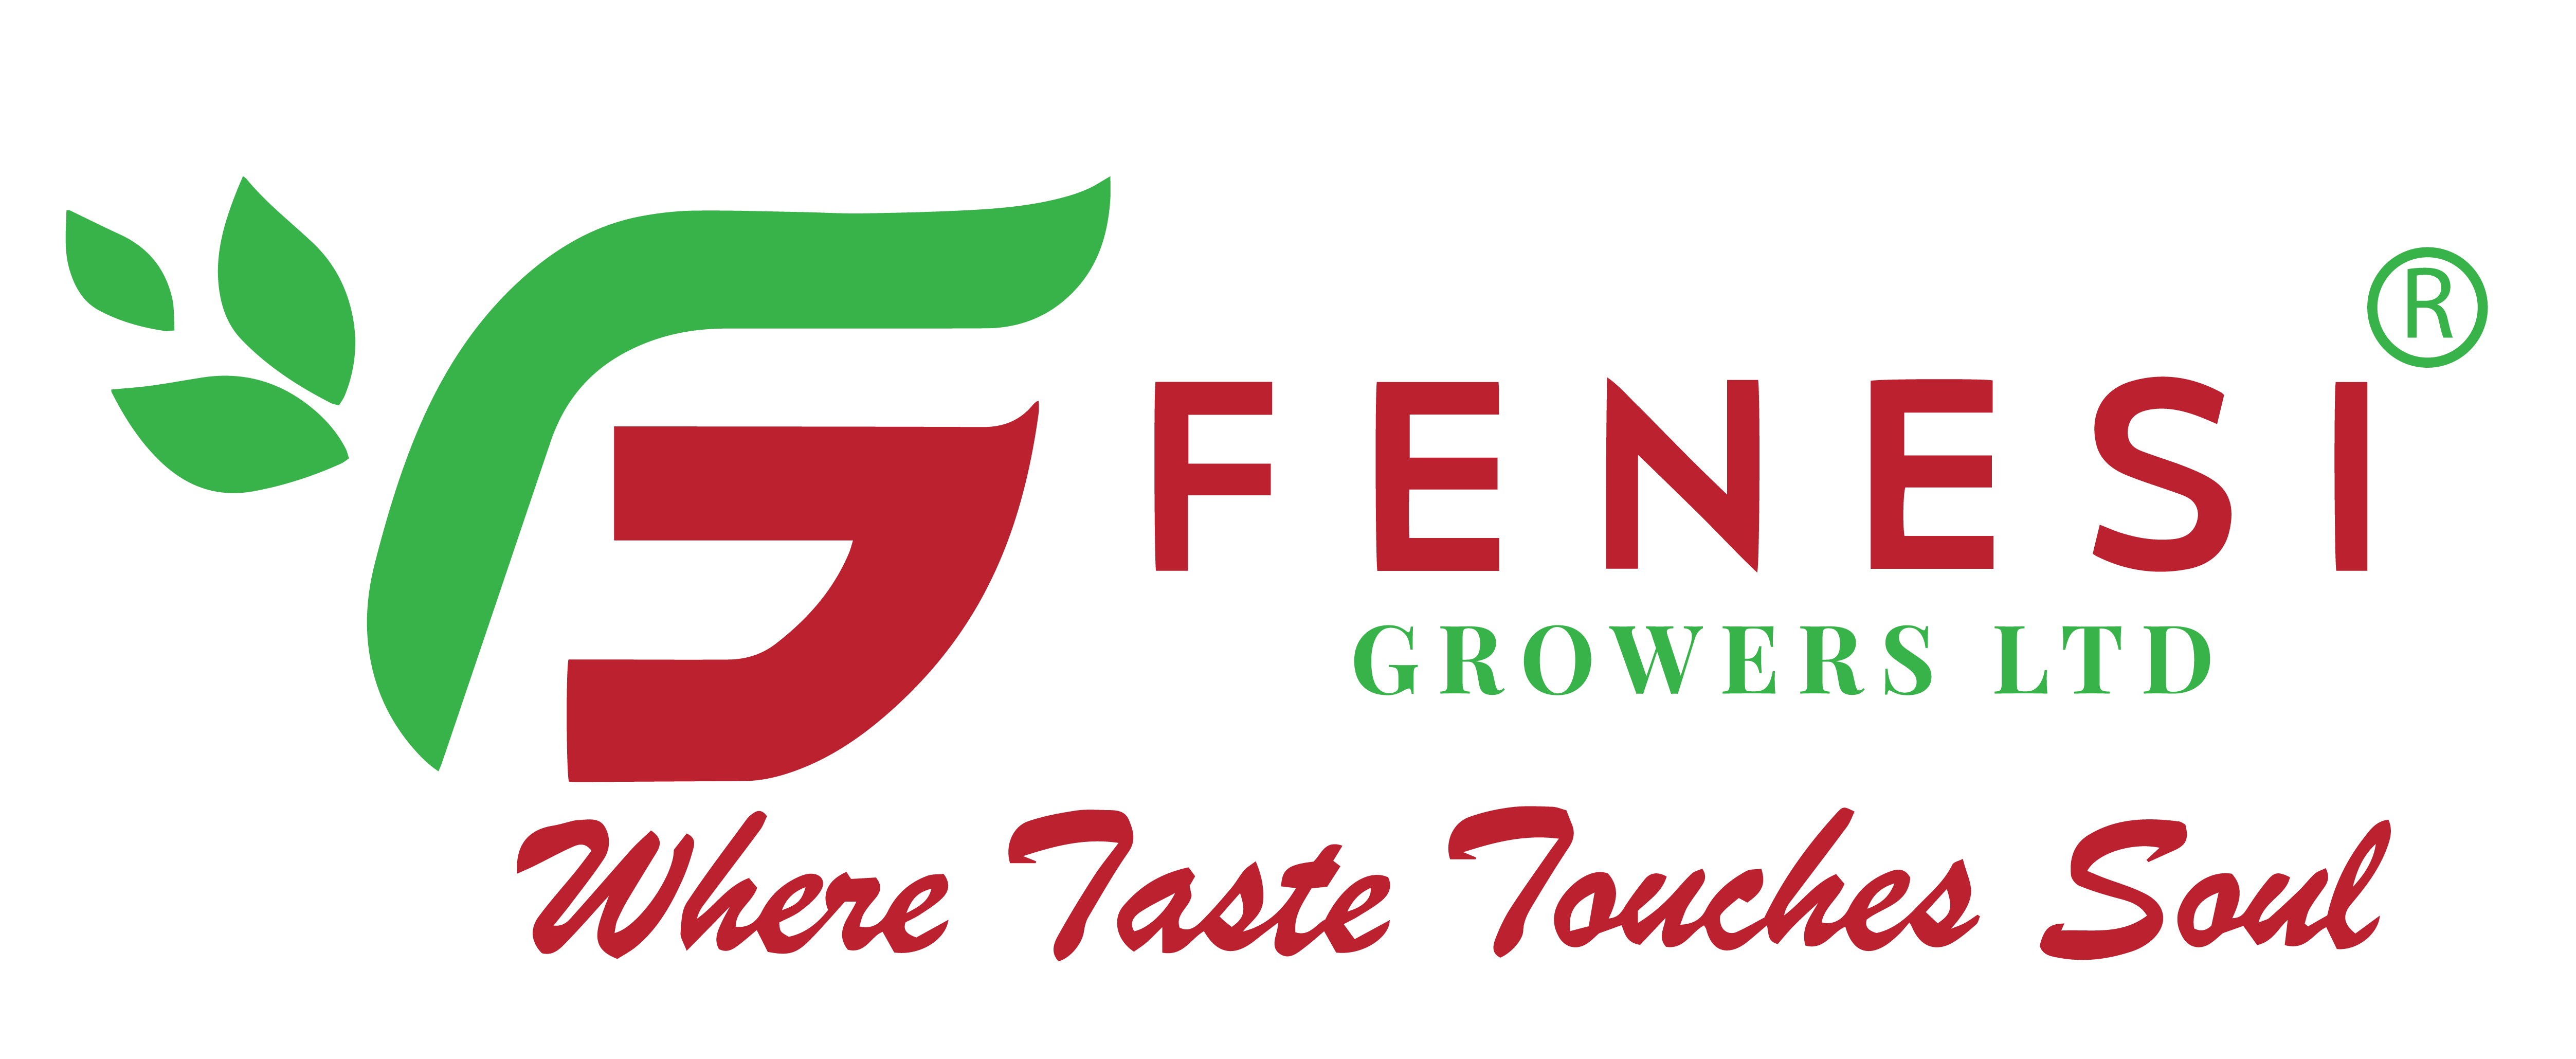 Fenesi Growers Ltd